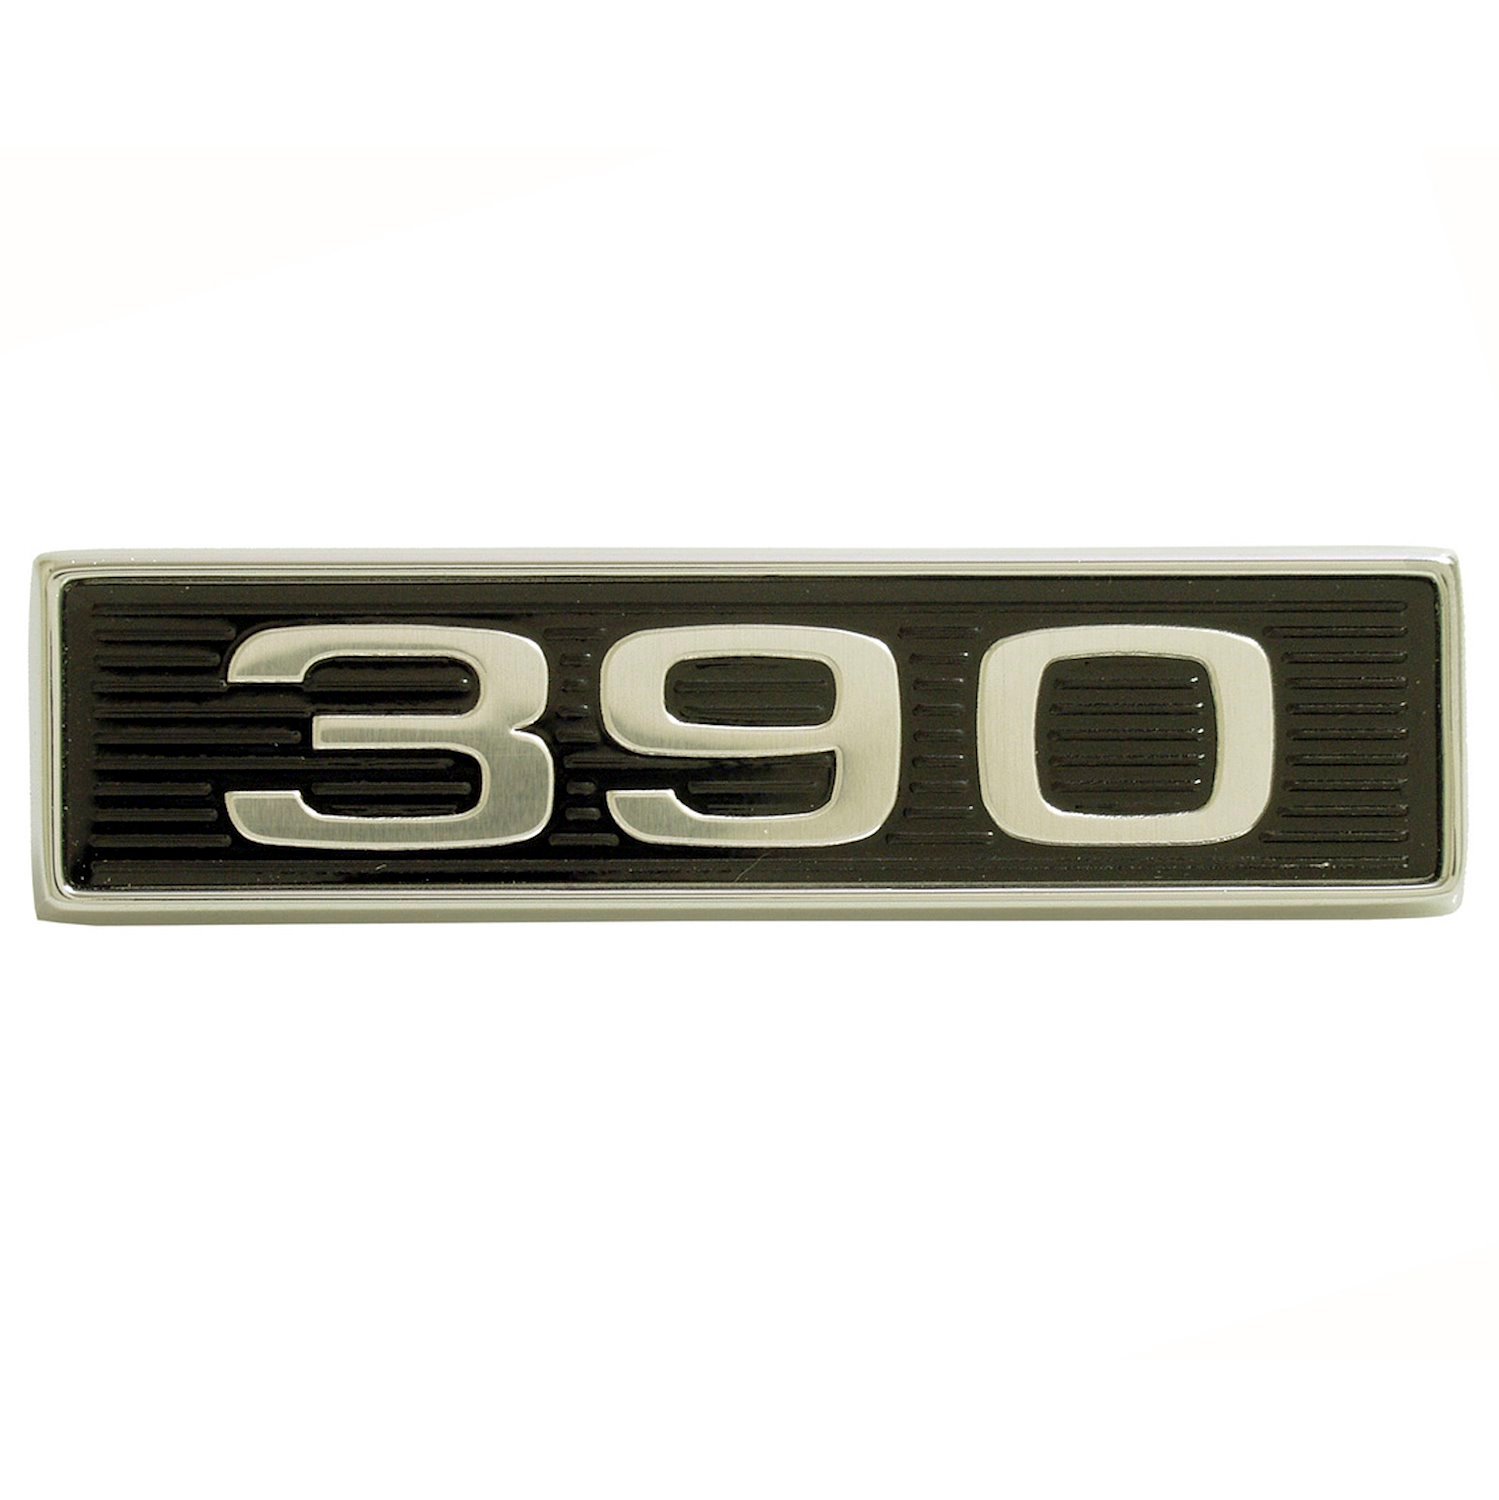 Hood Scoop Emblem 1969-1970 Ford Mustang